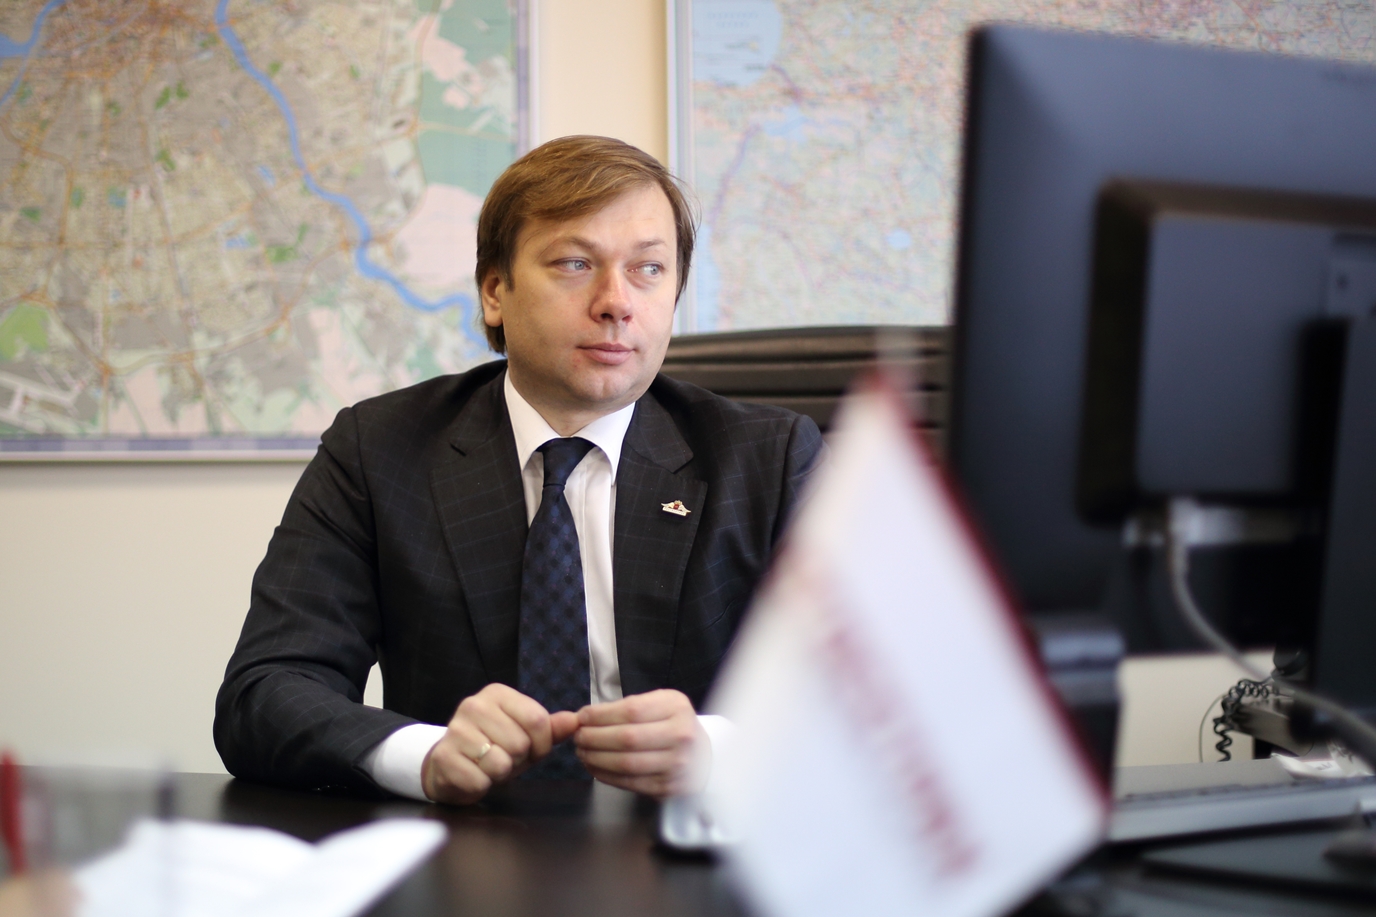 Игорь Лагуткин, директор филиала компании РОСГОССТРАХ в Санкт-Петербурге и Ленинградской области